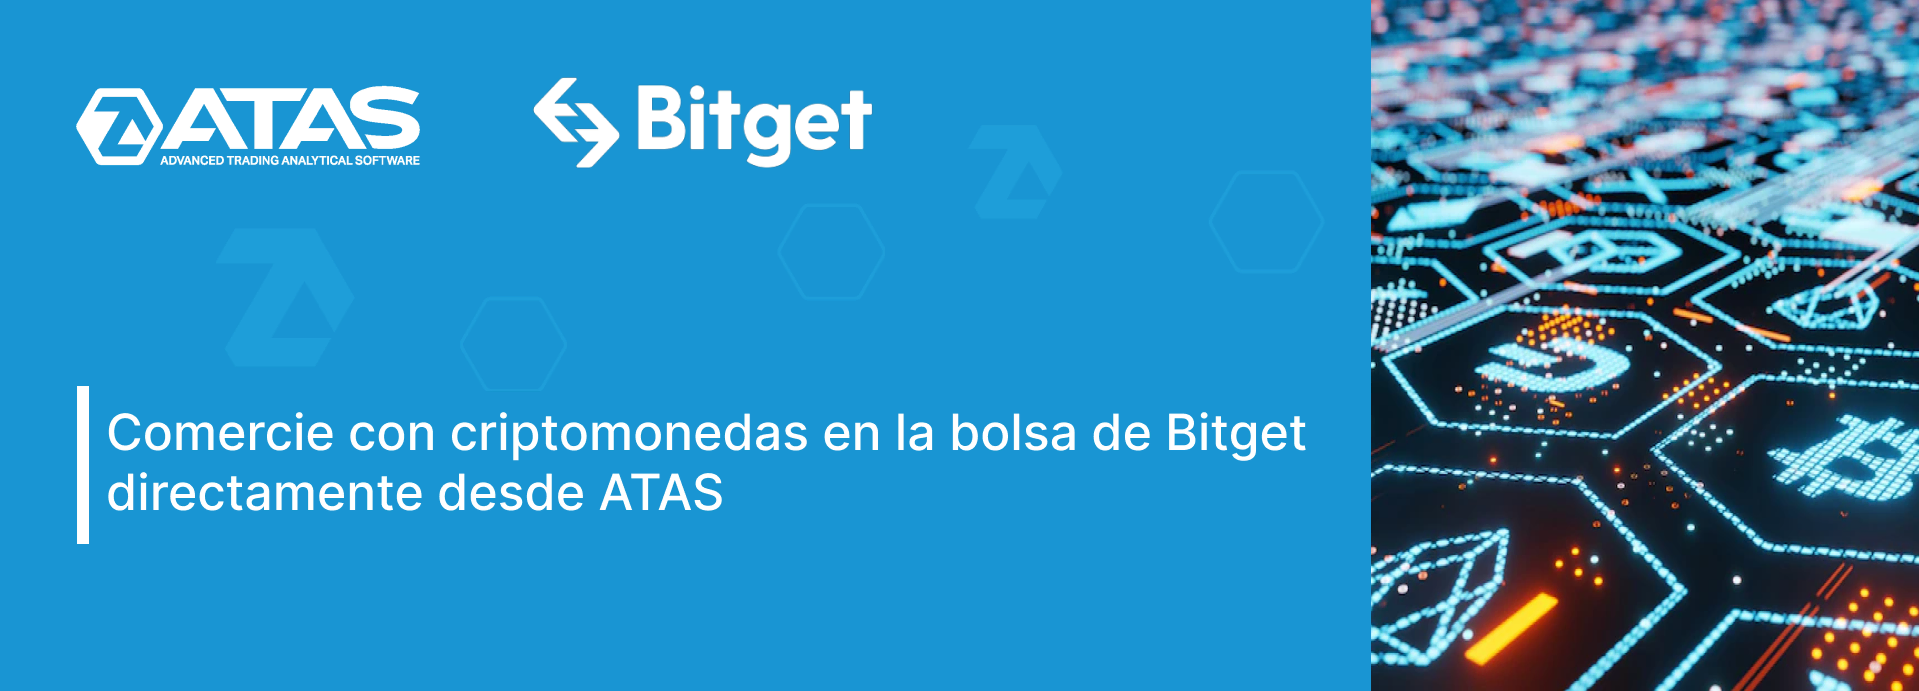 Comercie con criptomonedas en la bolsa de Bitget directamente desde ATAS